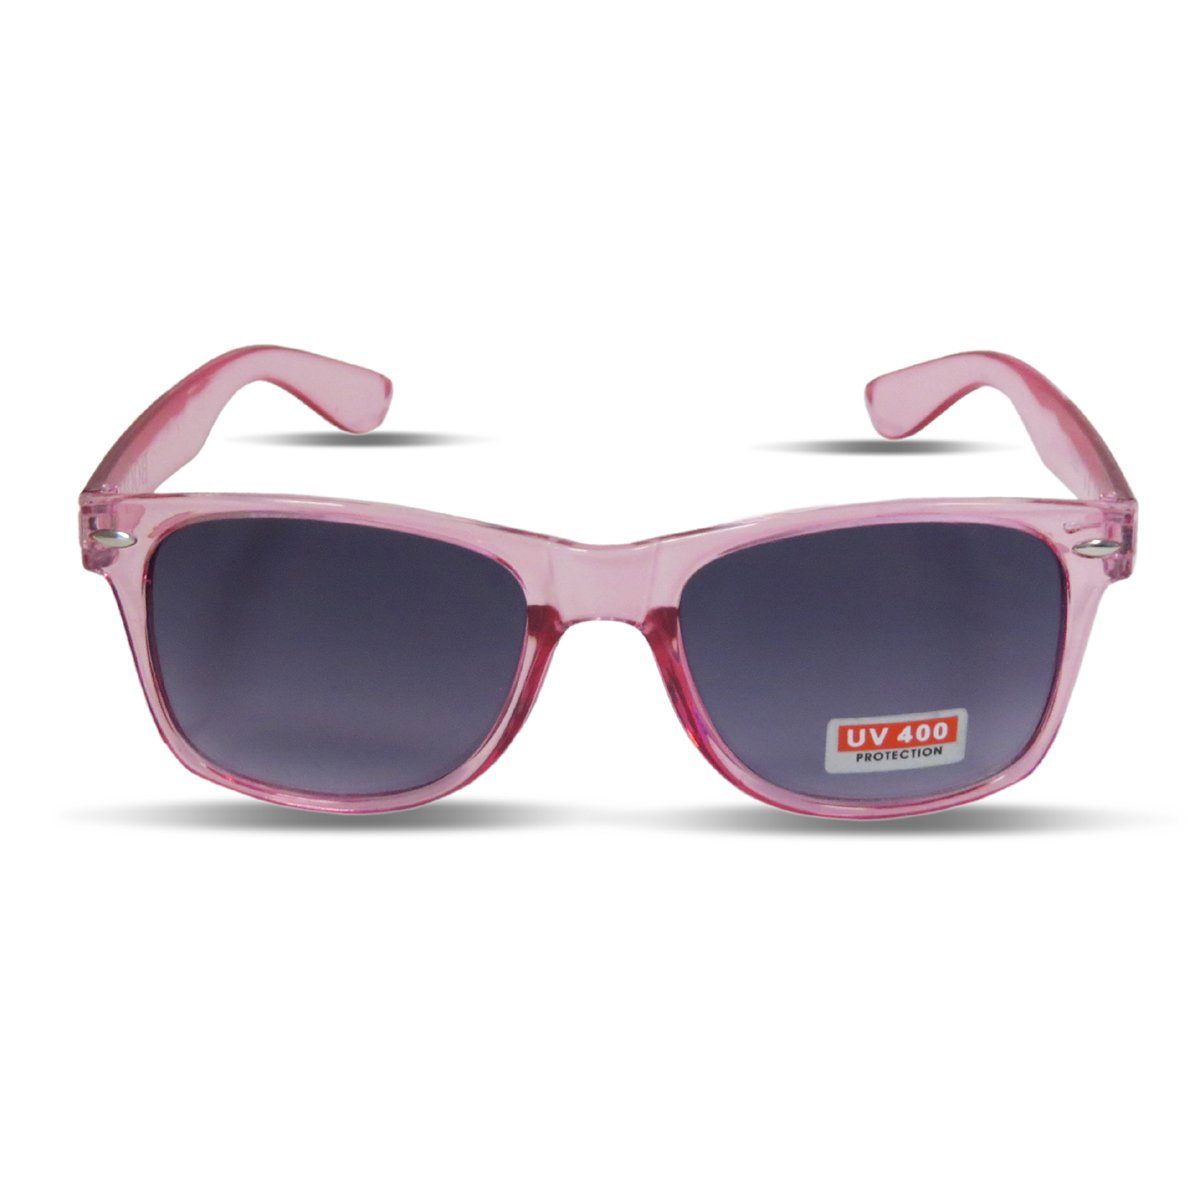 Sonia Originelli Sonnenbrille Sonnenbrille Einfarbig Transparent Partybrille Spaß Fasching Onesize pink | Sonnenbrillen